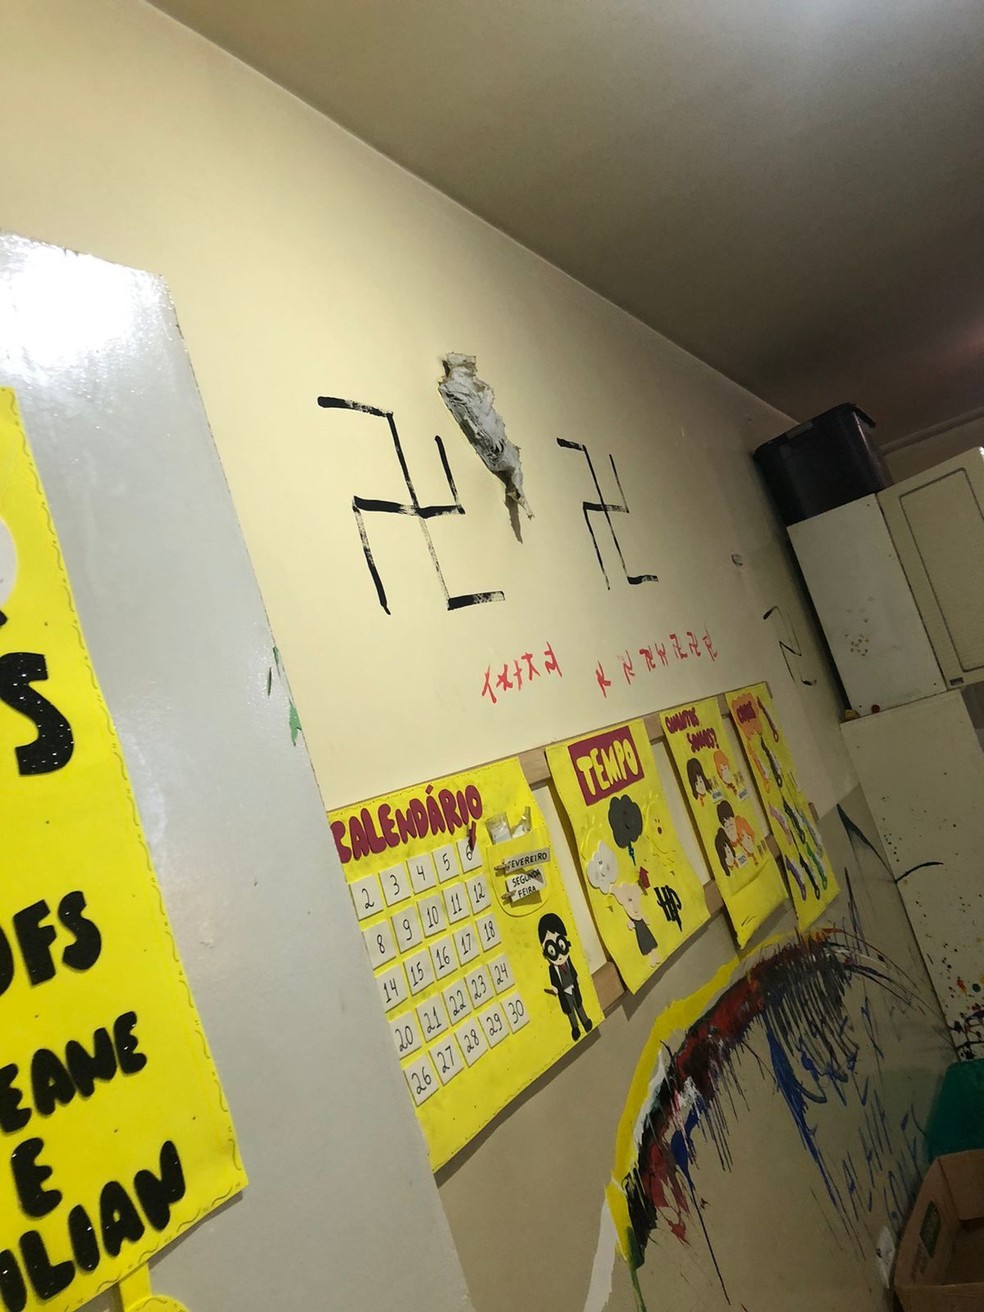 Suspeitos desenharam símbolo nazista nas paredes de creche  — Foto: Divulgação